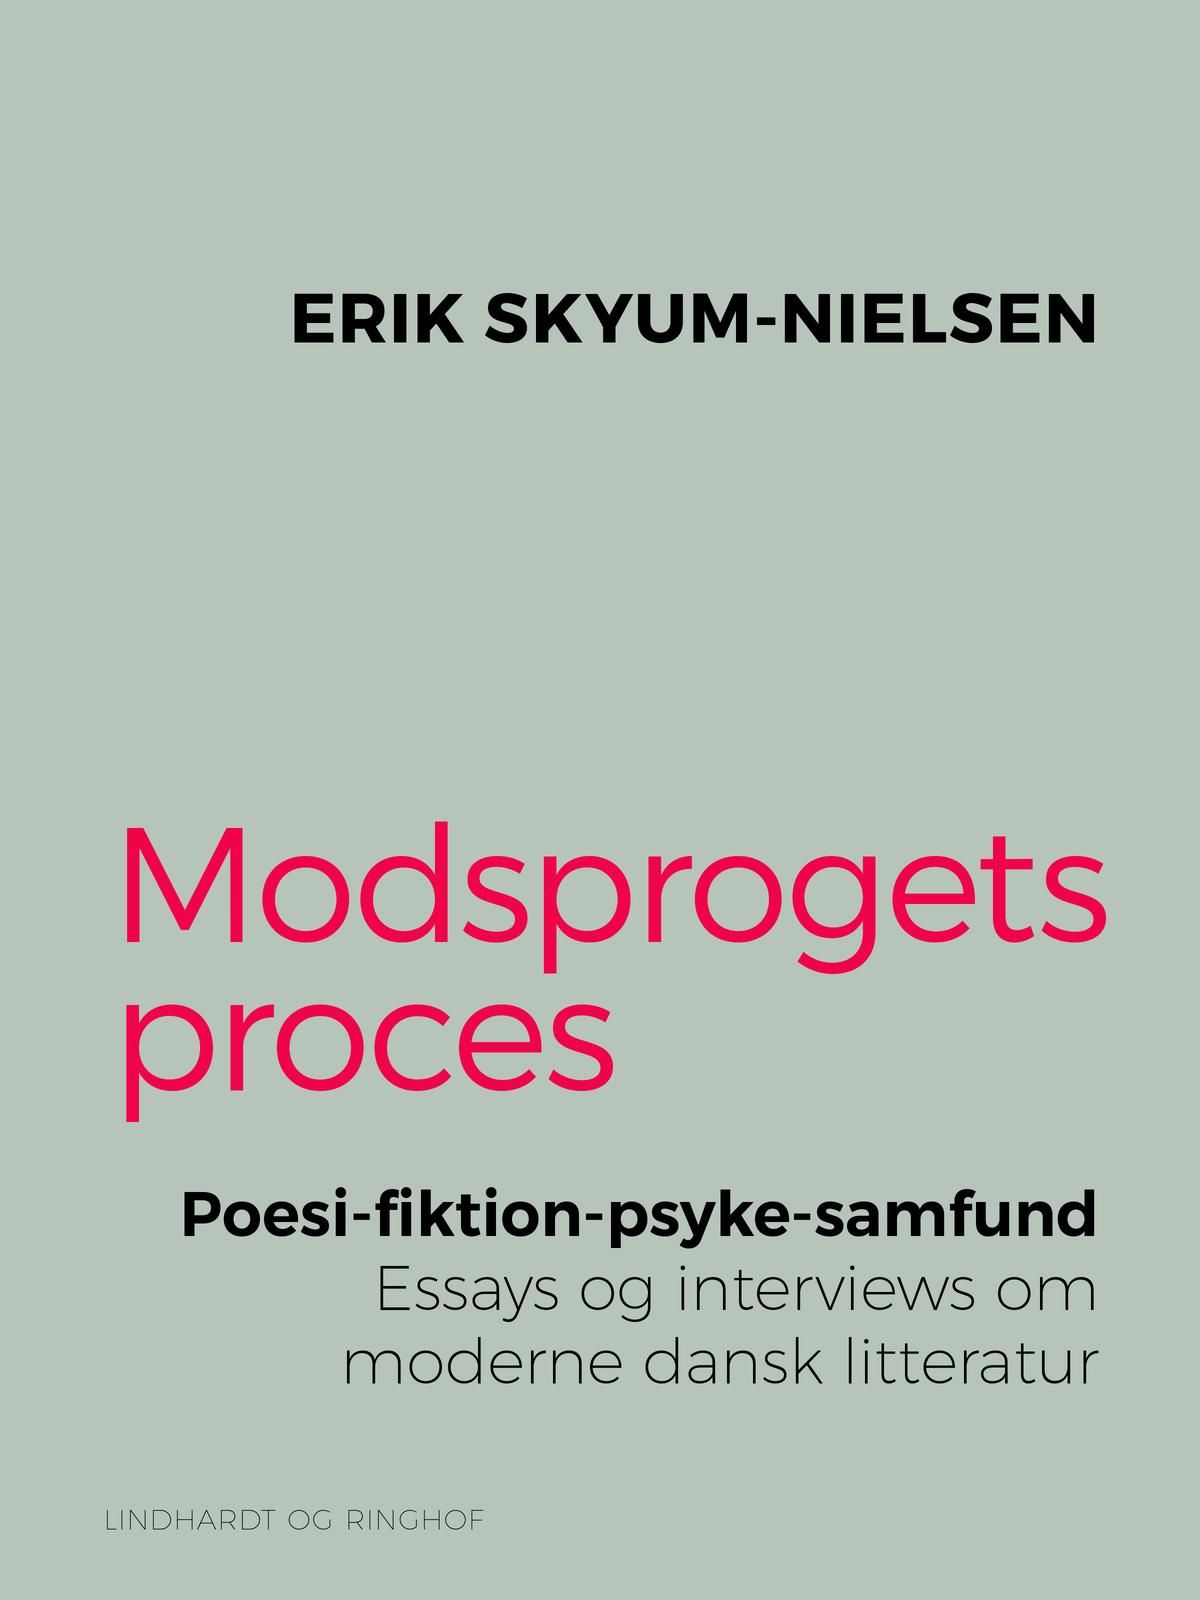 Modsprogets proces. Poesi - fiktion - psyke - samfund. Essays og interviews om moderne dansk litteratur, e-bog af Erik Skyum-Nielsen